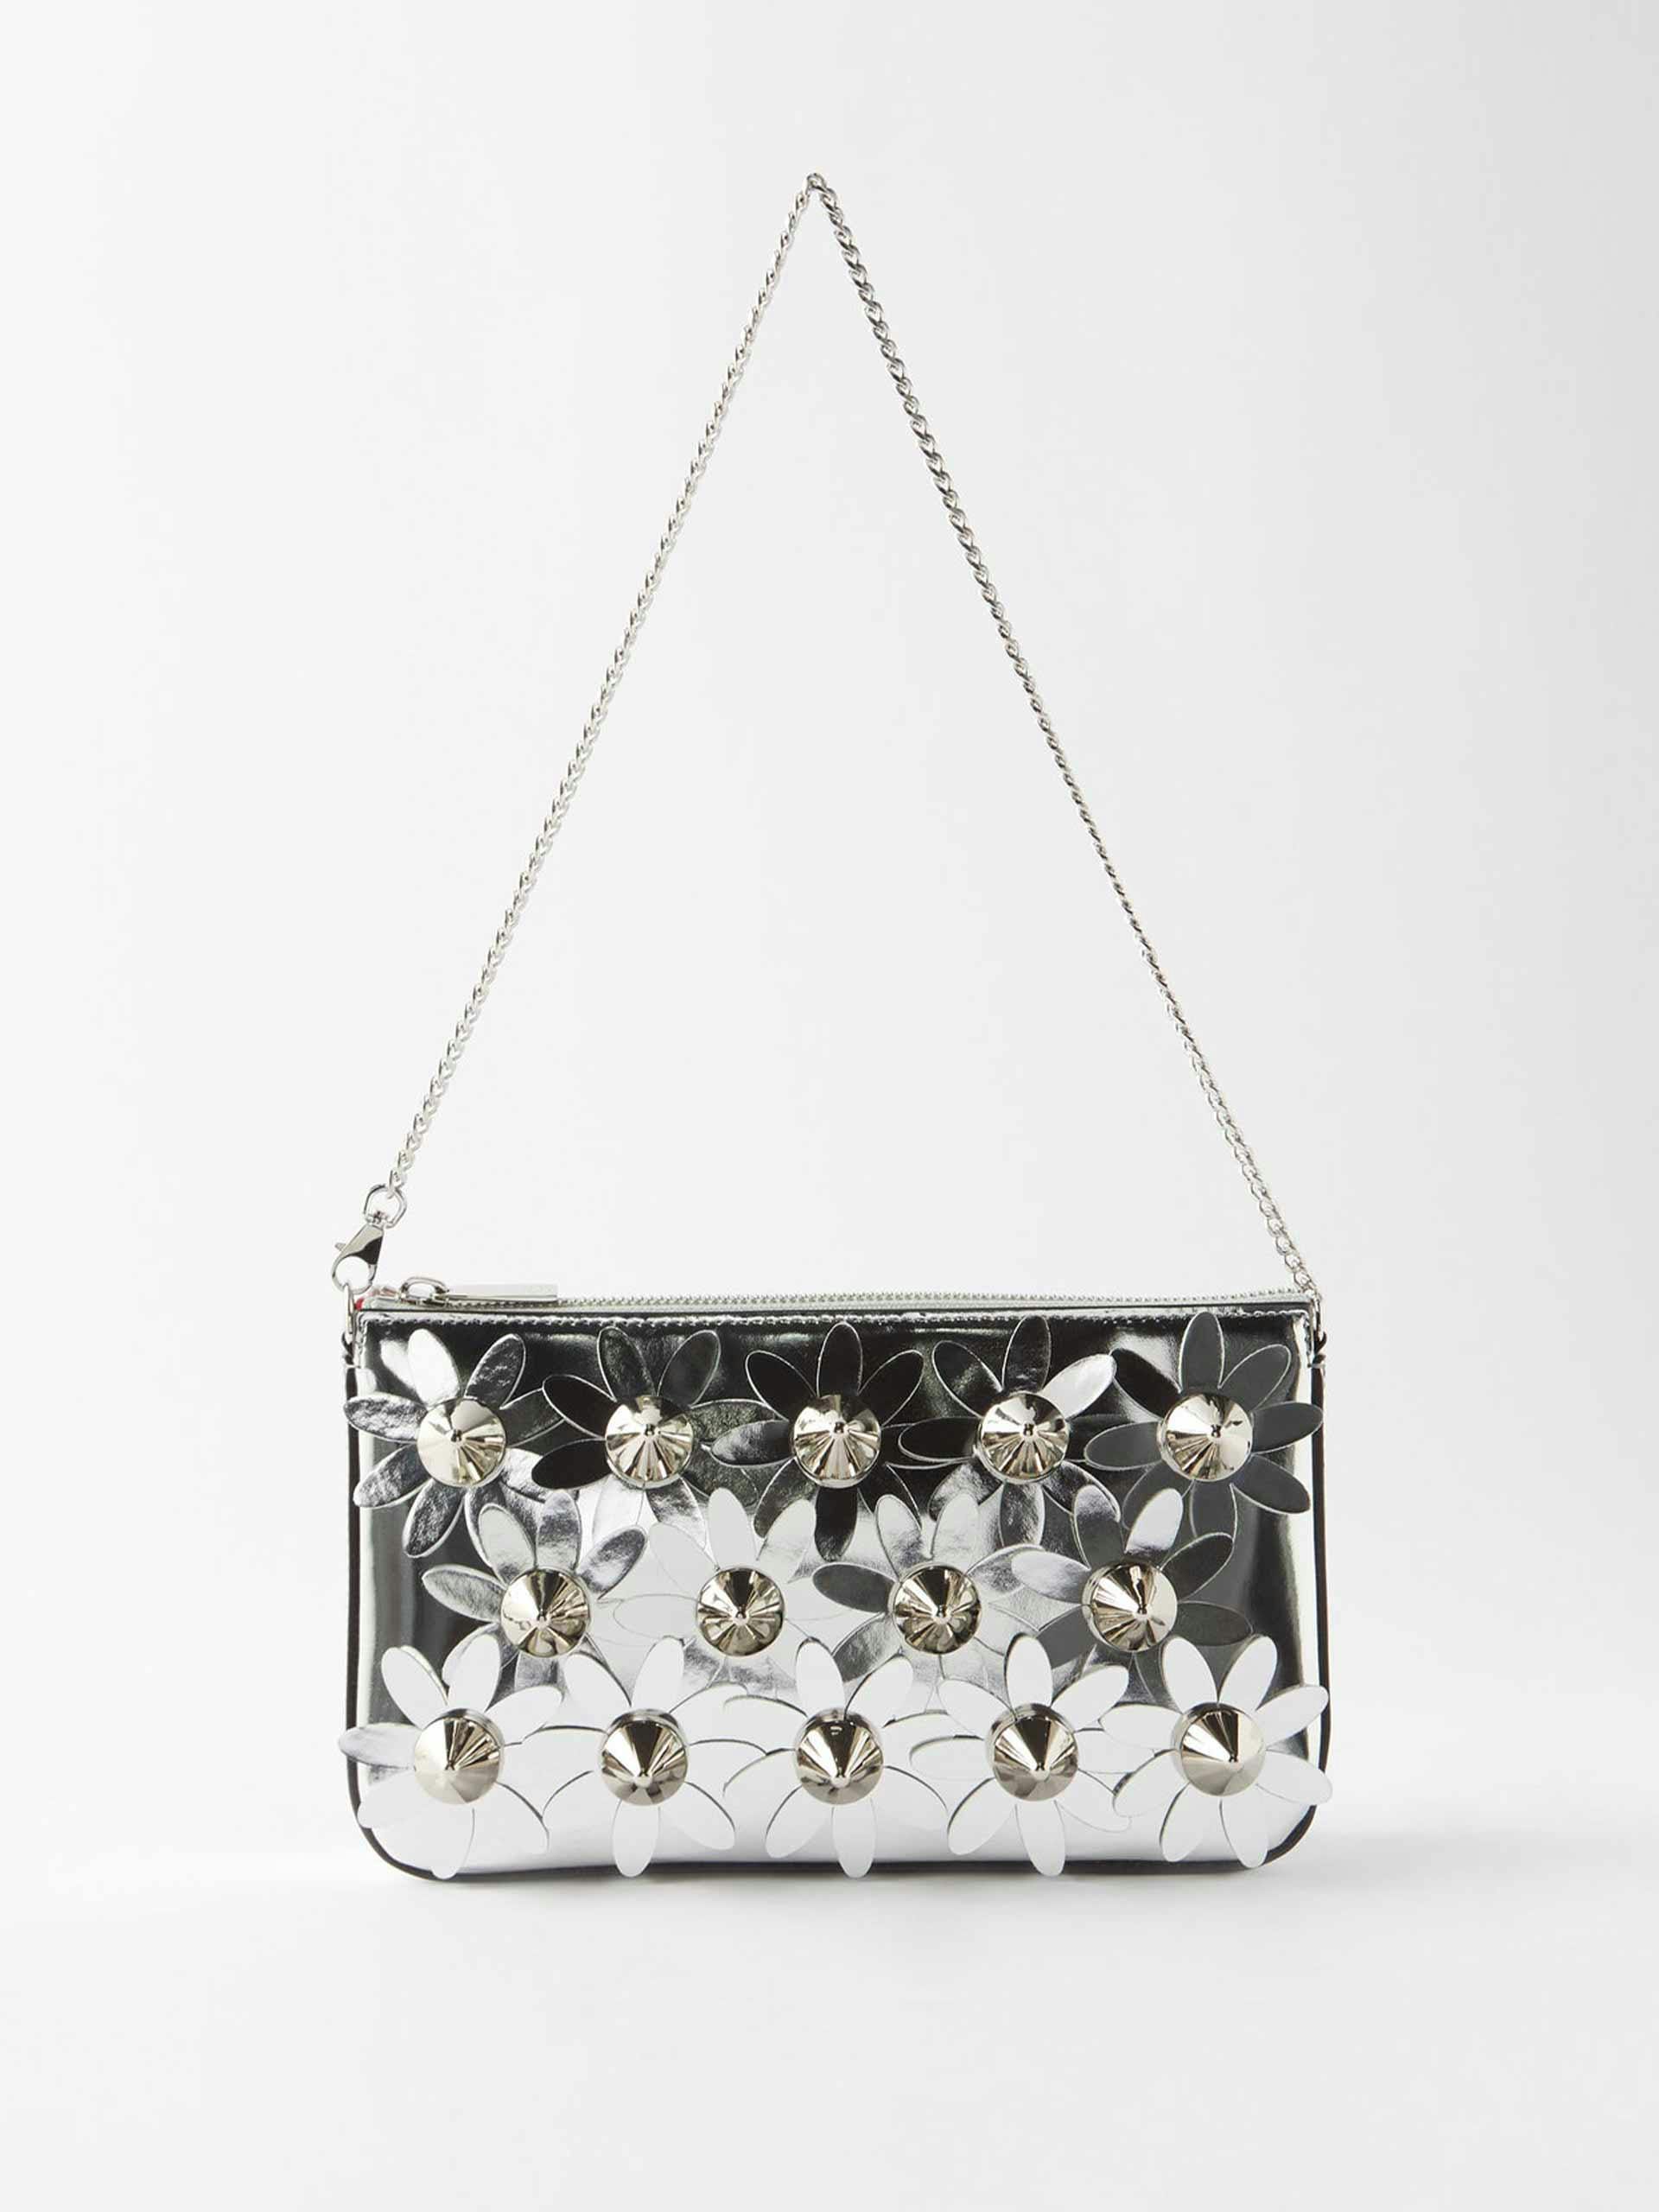 Silver embellished bag